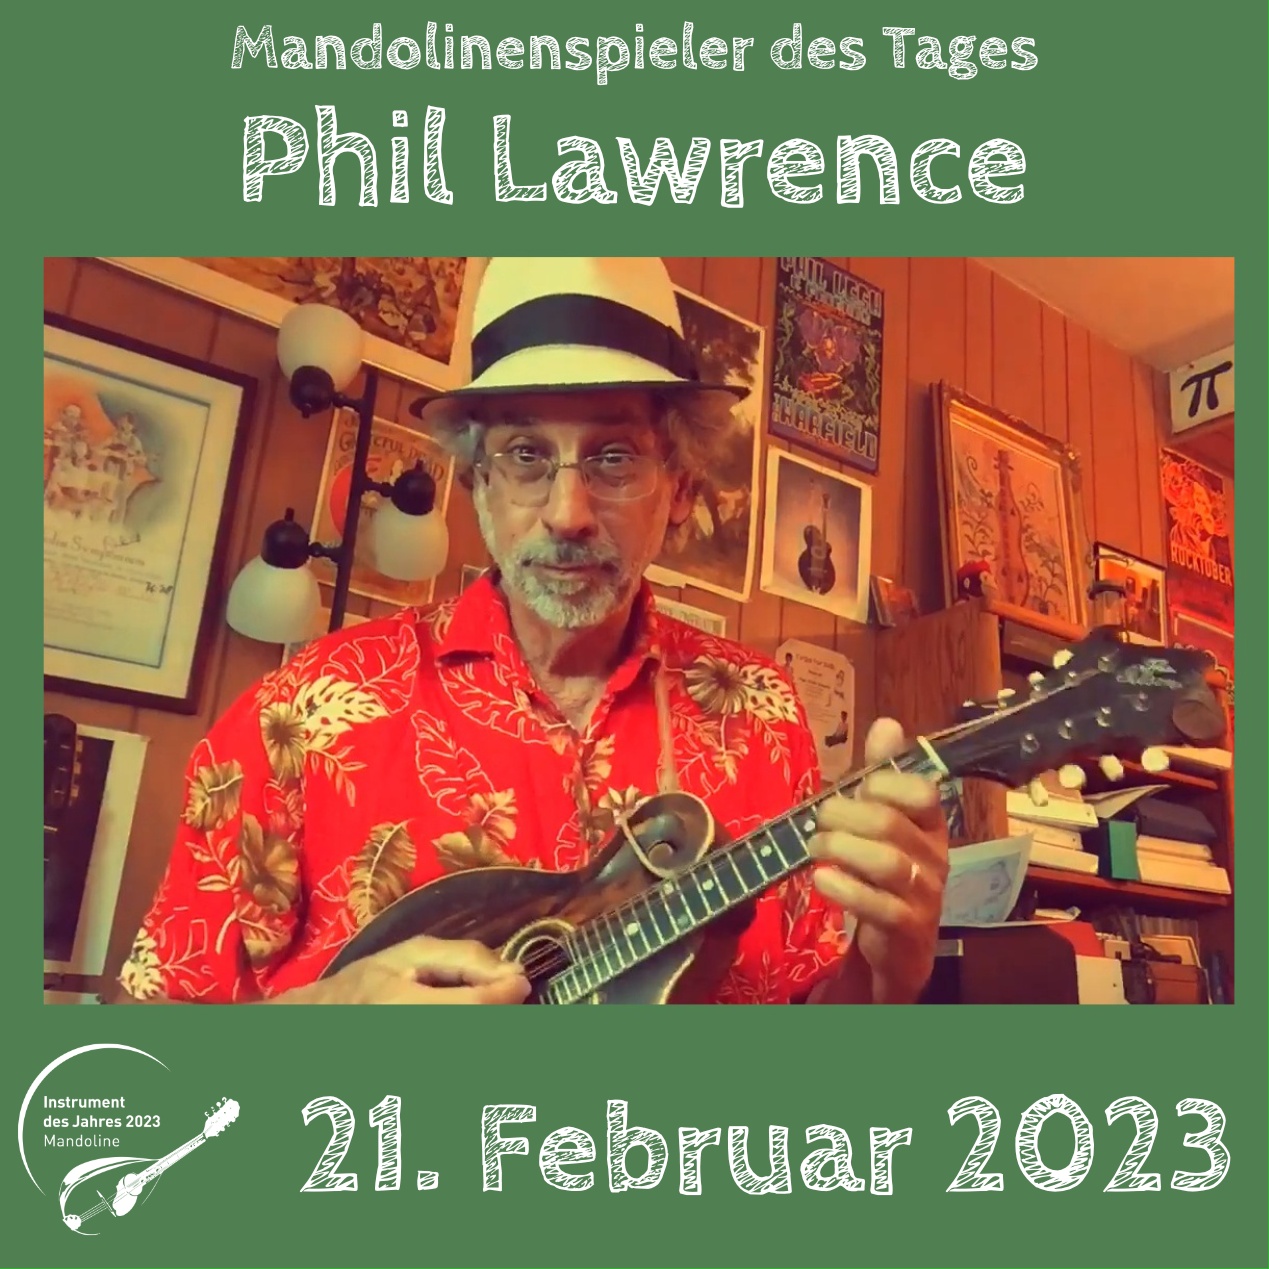 Phil Lawrence Mandoline Instrument des Jahres 2023 Mandolinenspieler des Tages